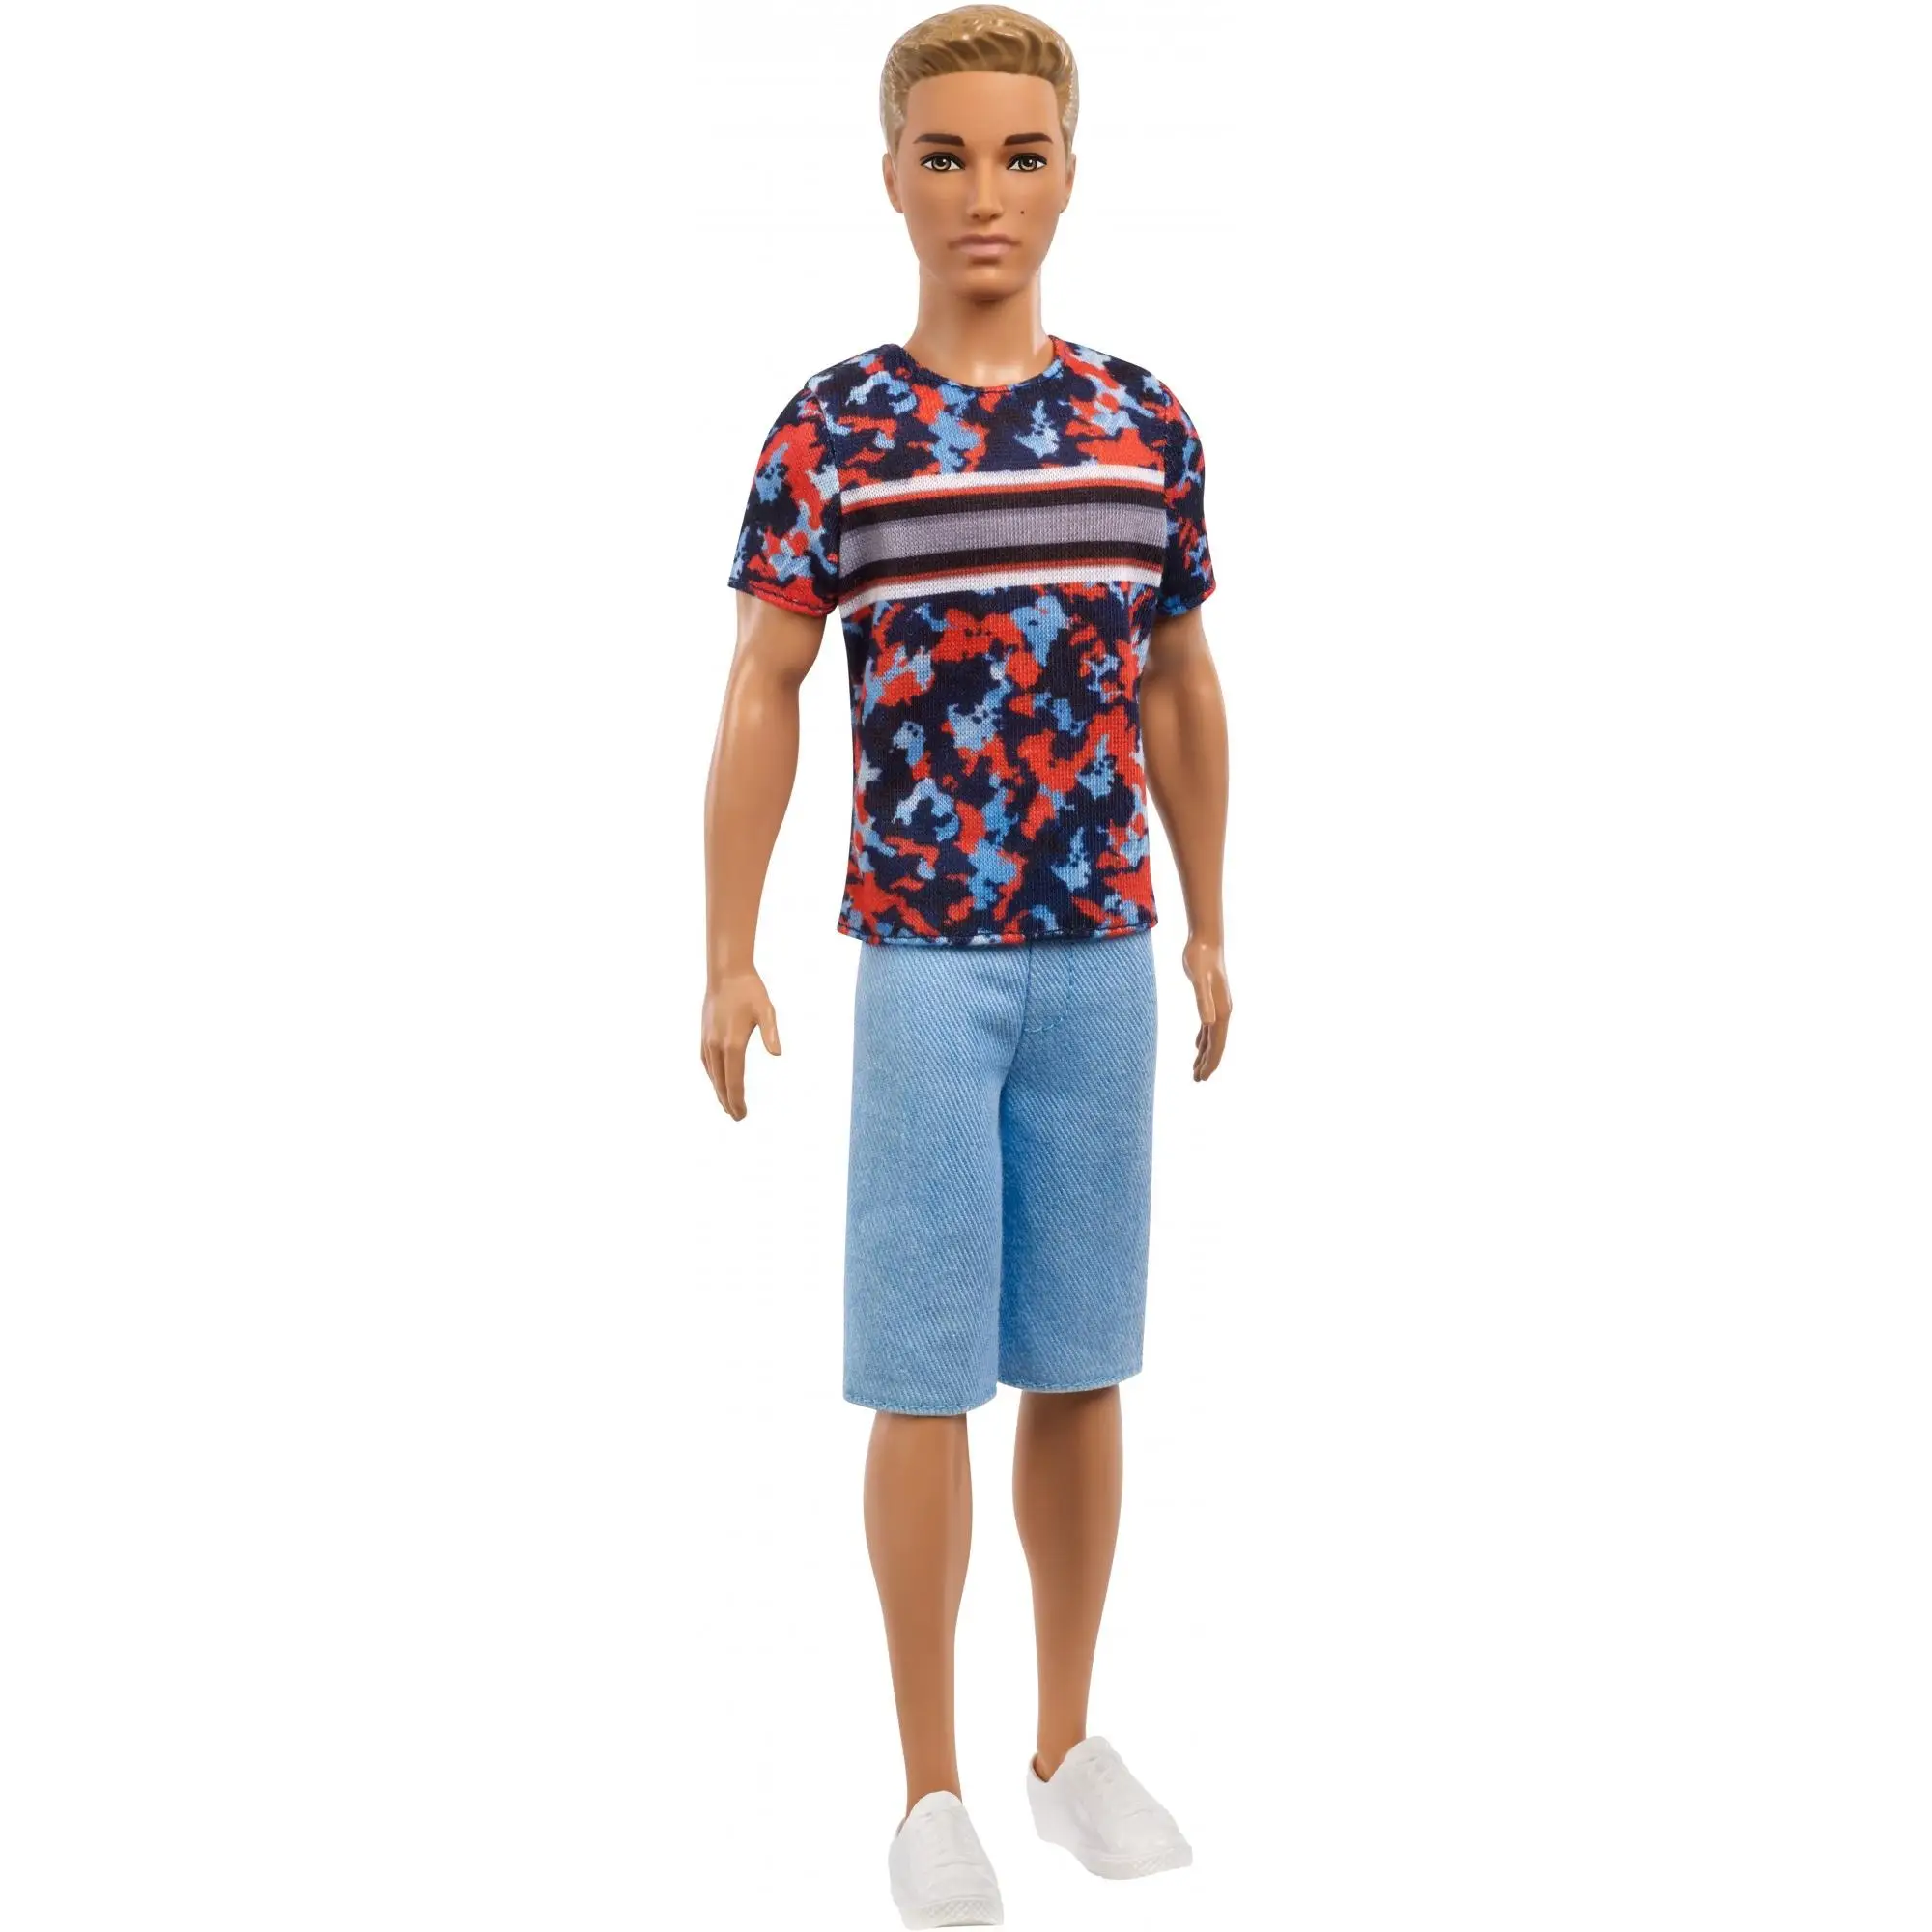 Подлинный Барби красивый парень Кэн мальчик костюм Дианы Принс дом игры, игрушки куклы - Цвет: 5